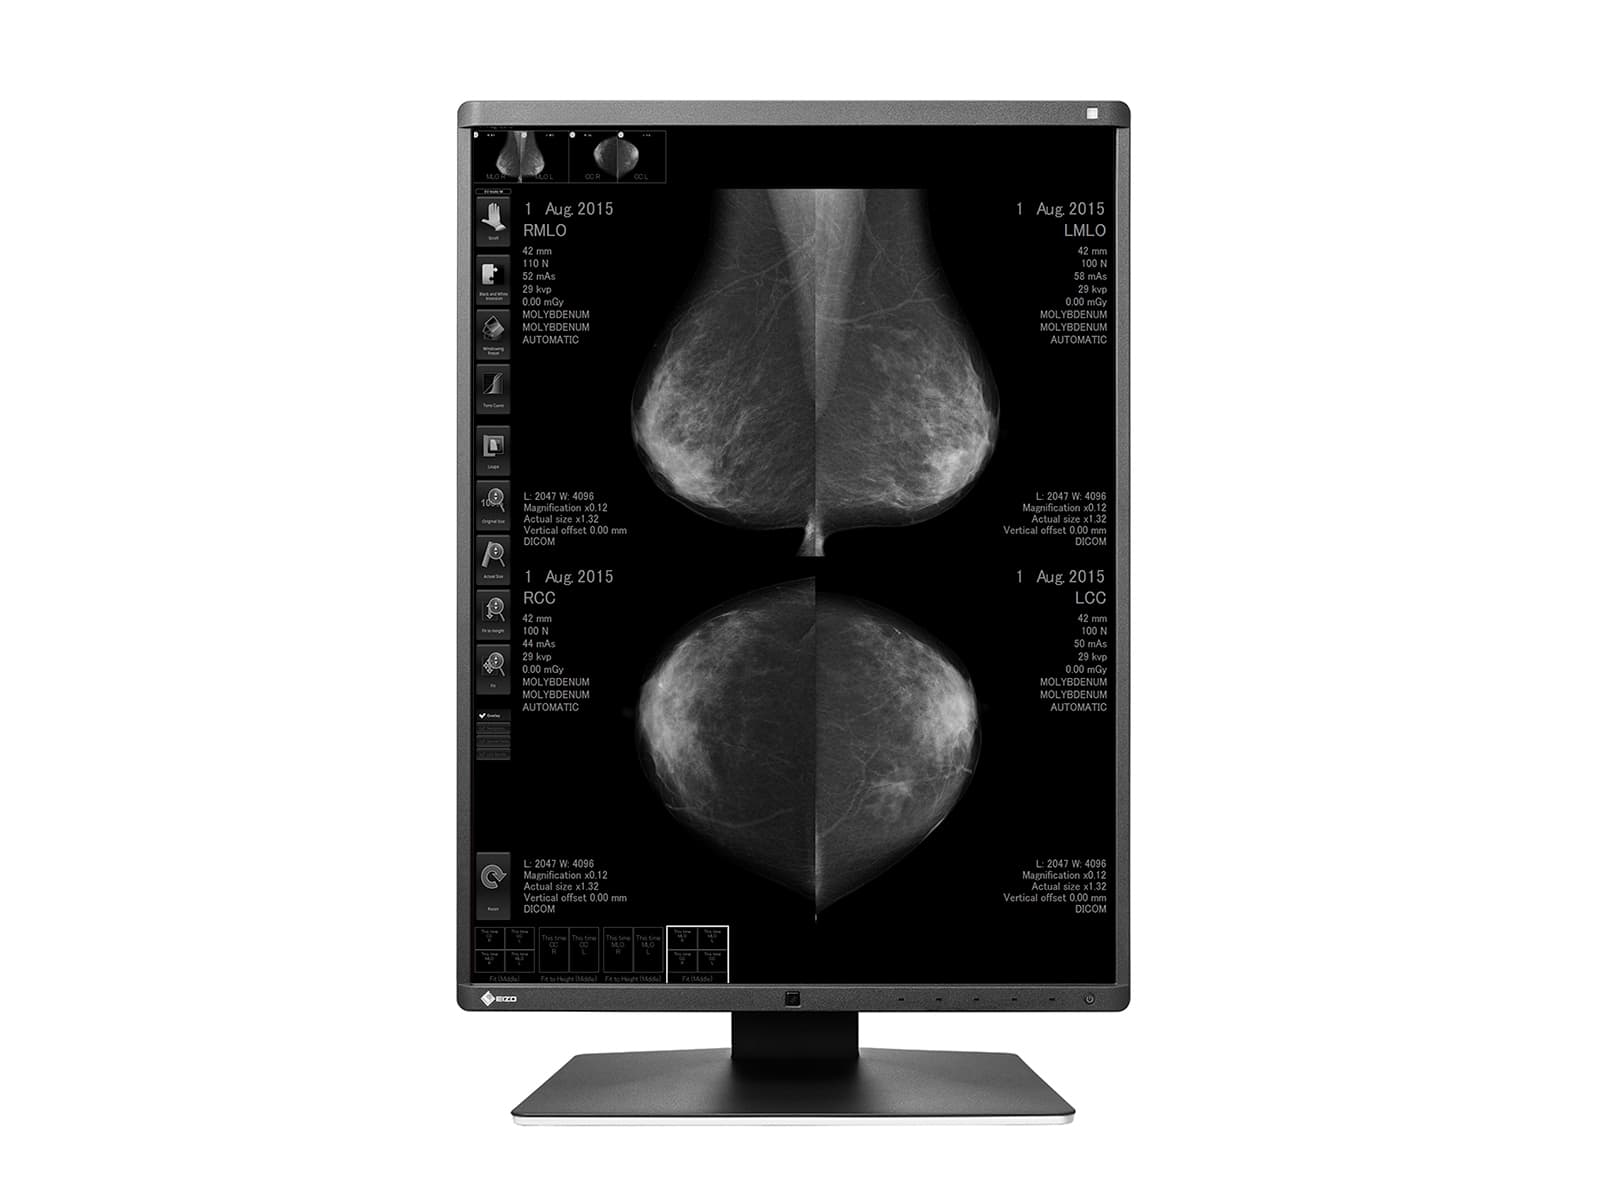 Eizo RadiForce GX560 5MP 21" LED Monitor de visualización de imágenes mamarias Mammo 3D-DBT en escala de grises (GX560-MD) Monitors.com